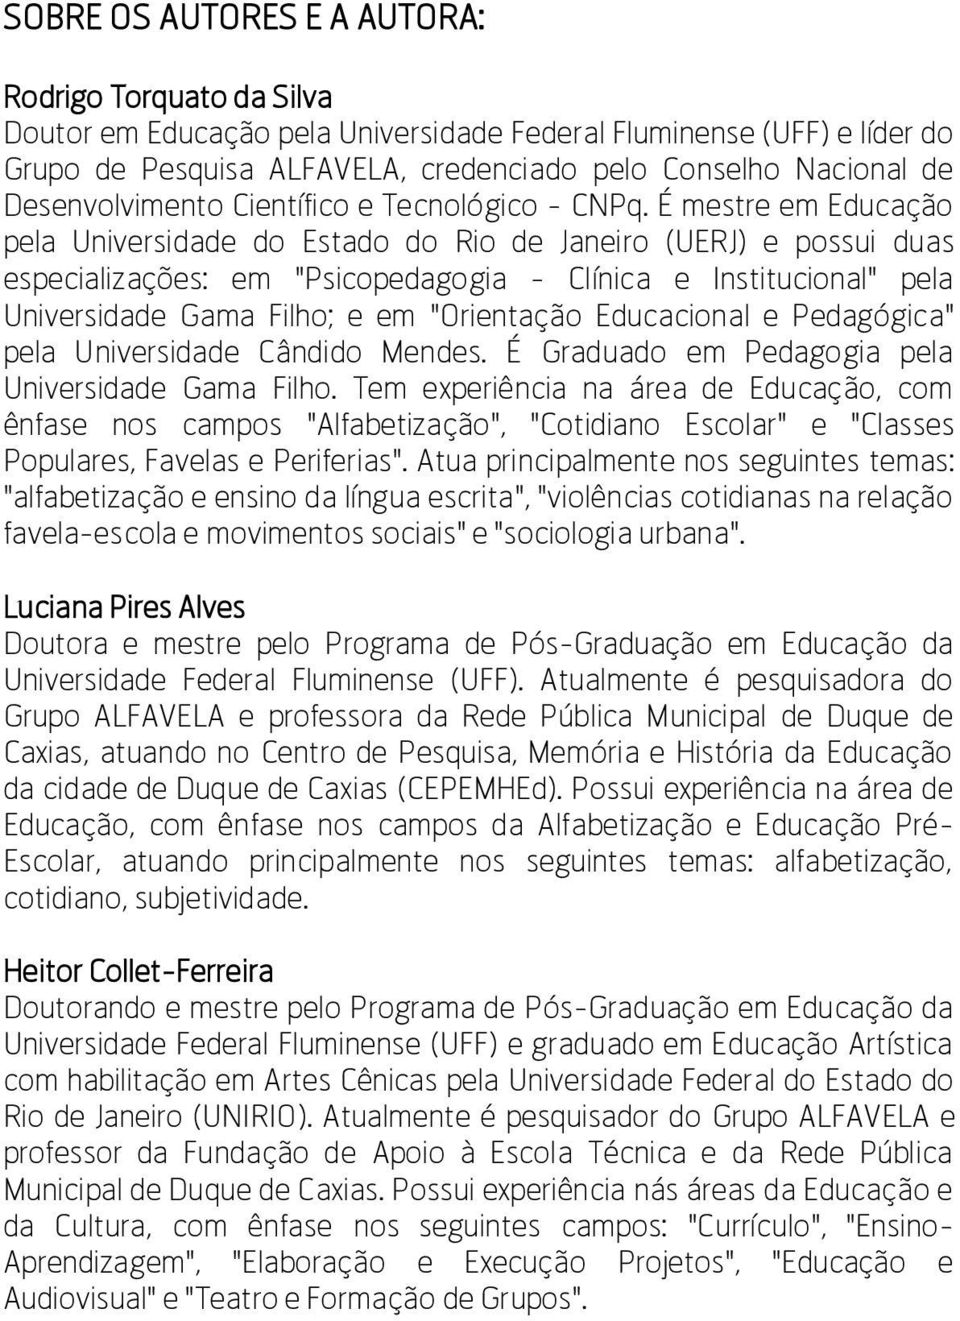 É mestre em Educação pela Universidade do Estado do Rio de Janeiro (UERJ) e possui duas especializações: em "Psicopedagogia - Clínica e Institucional" pela Universidade Gama Filho; e em "Orientação